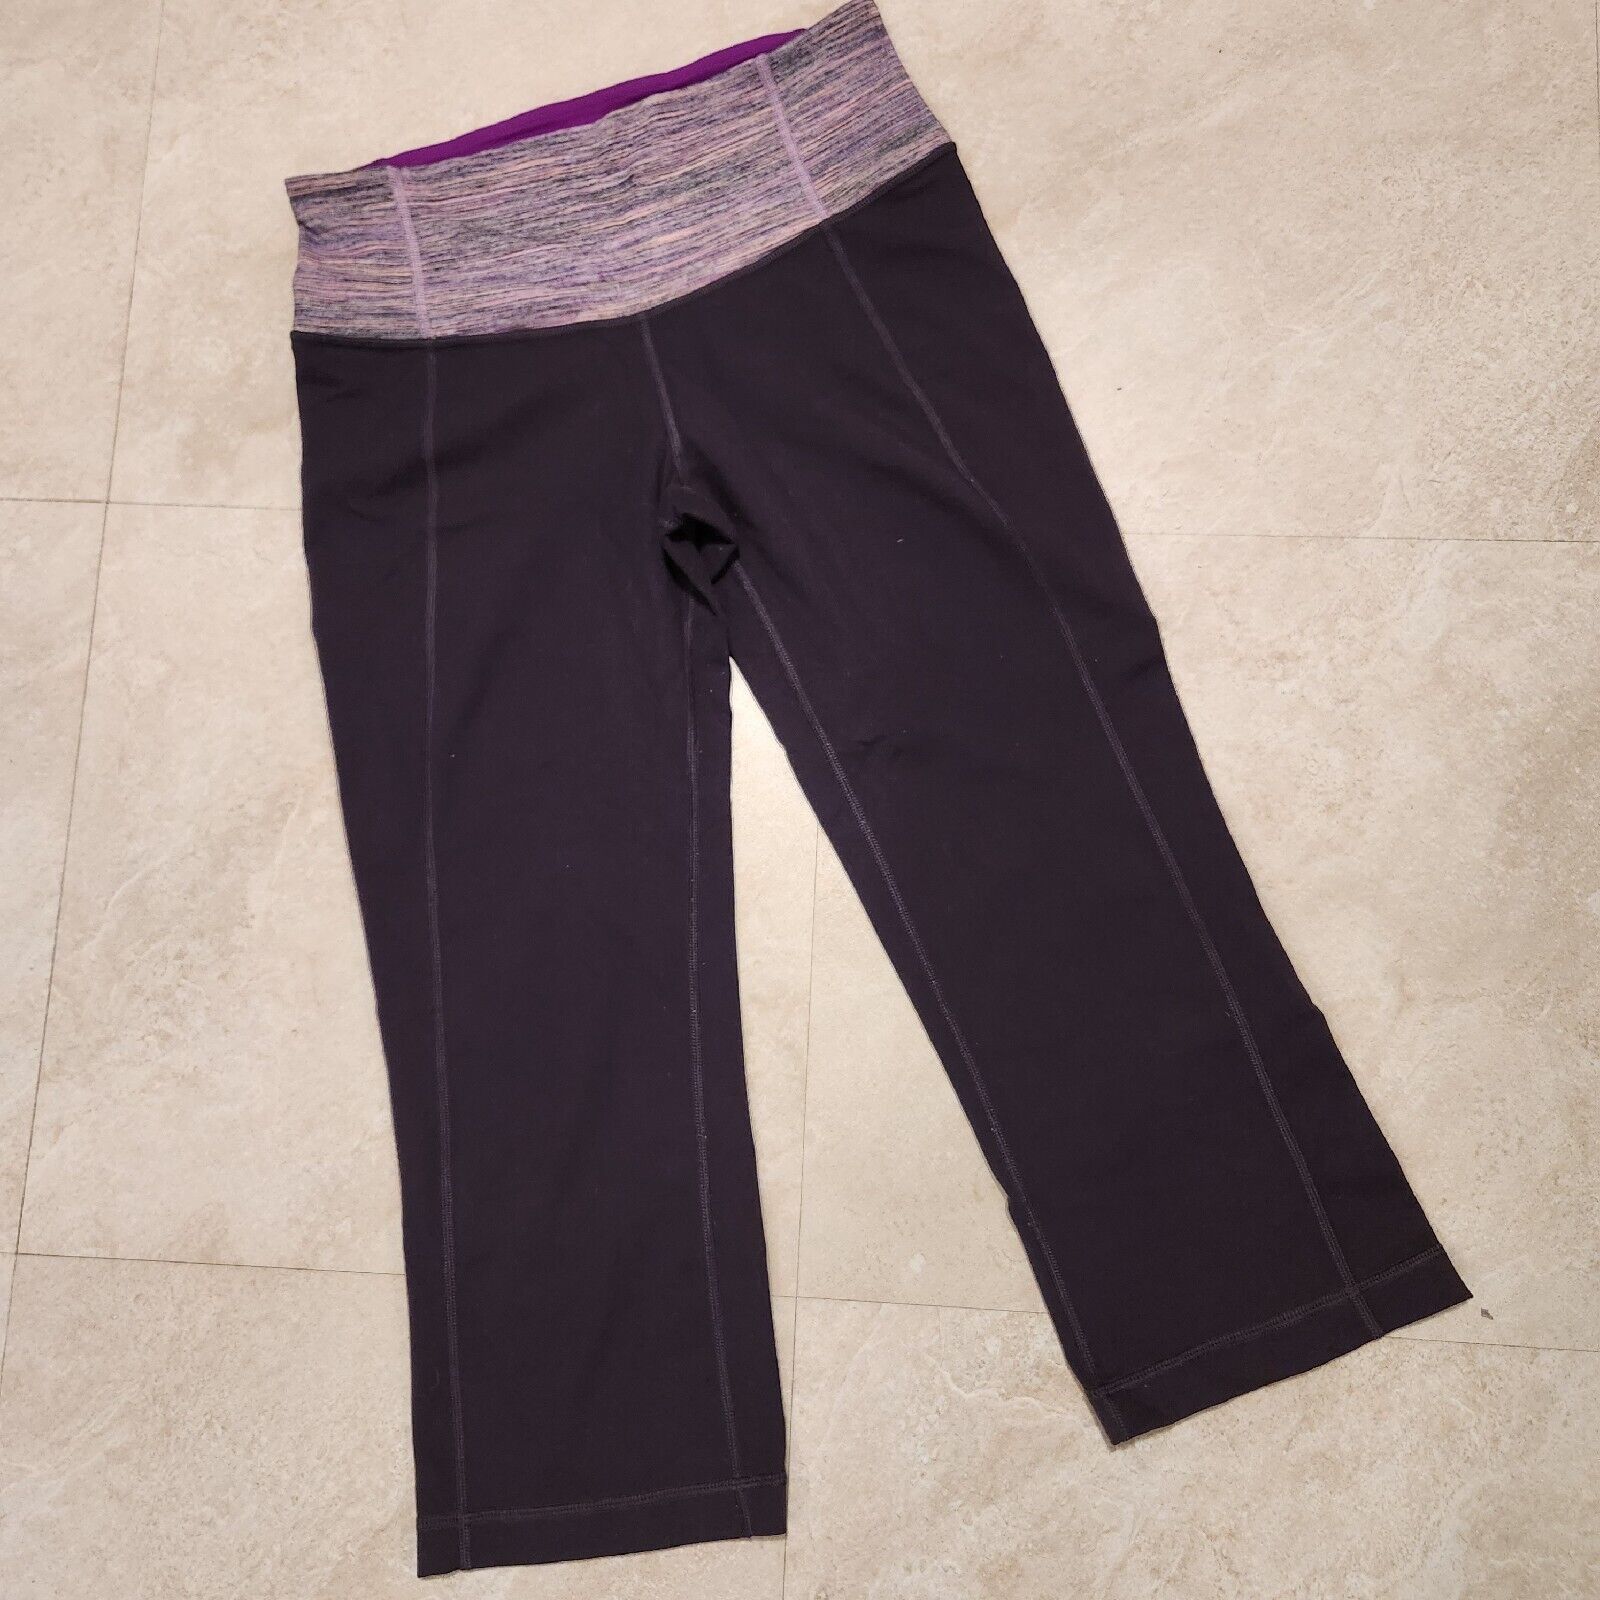 Lululemon Lululemon Womens Size 6 Purple Leggings Yoga Pants High